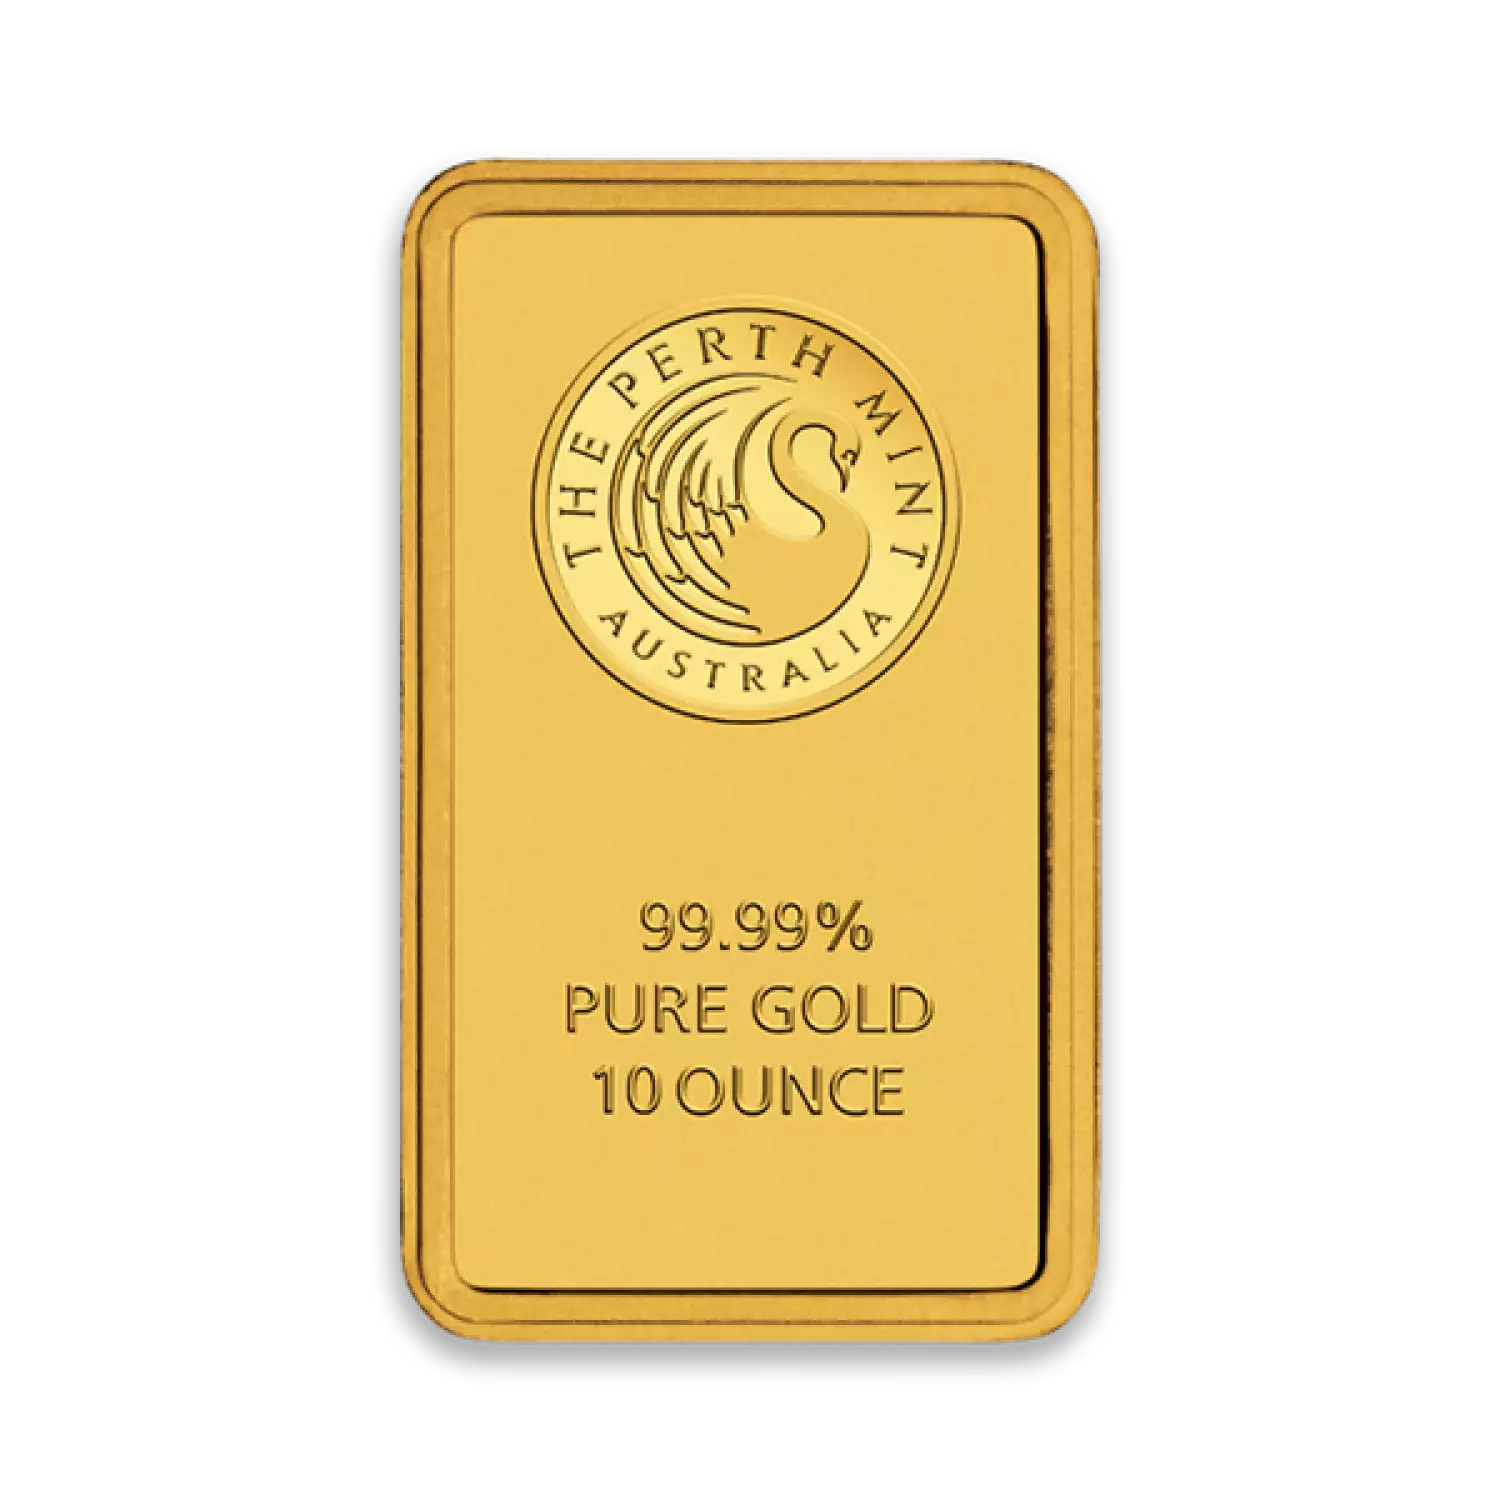 10oz Australian Perth Mint Gold bar - Minted